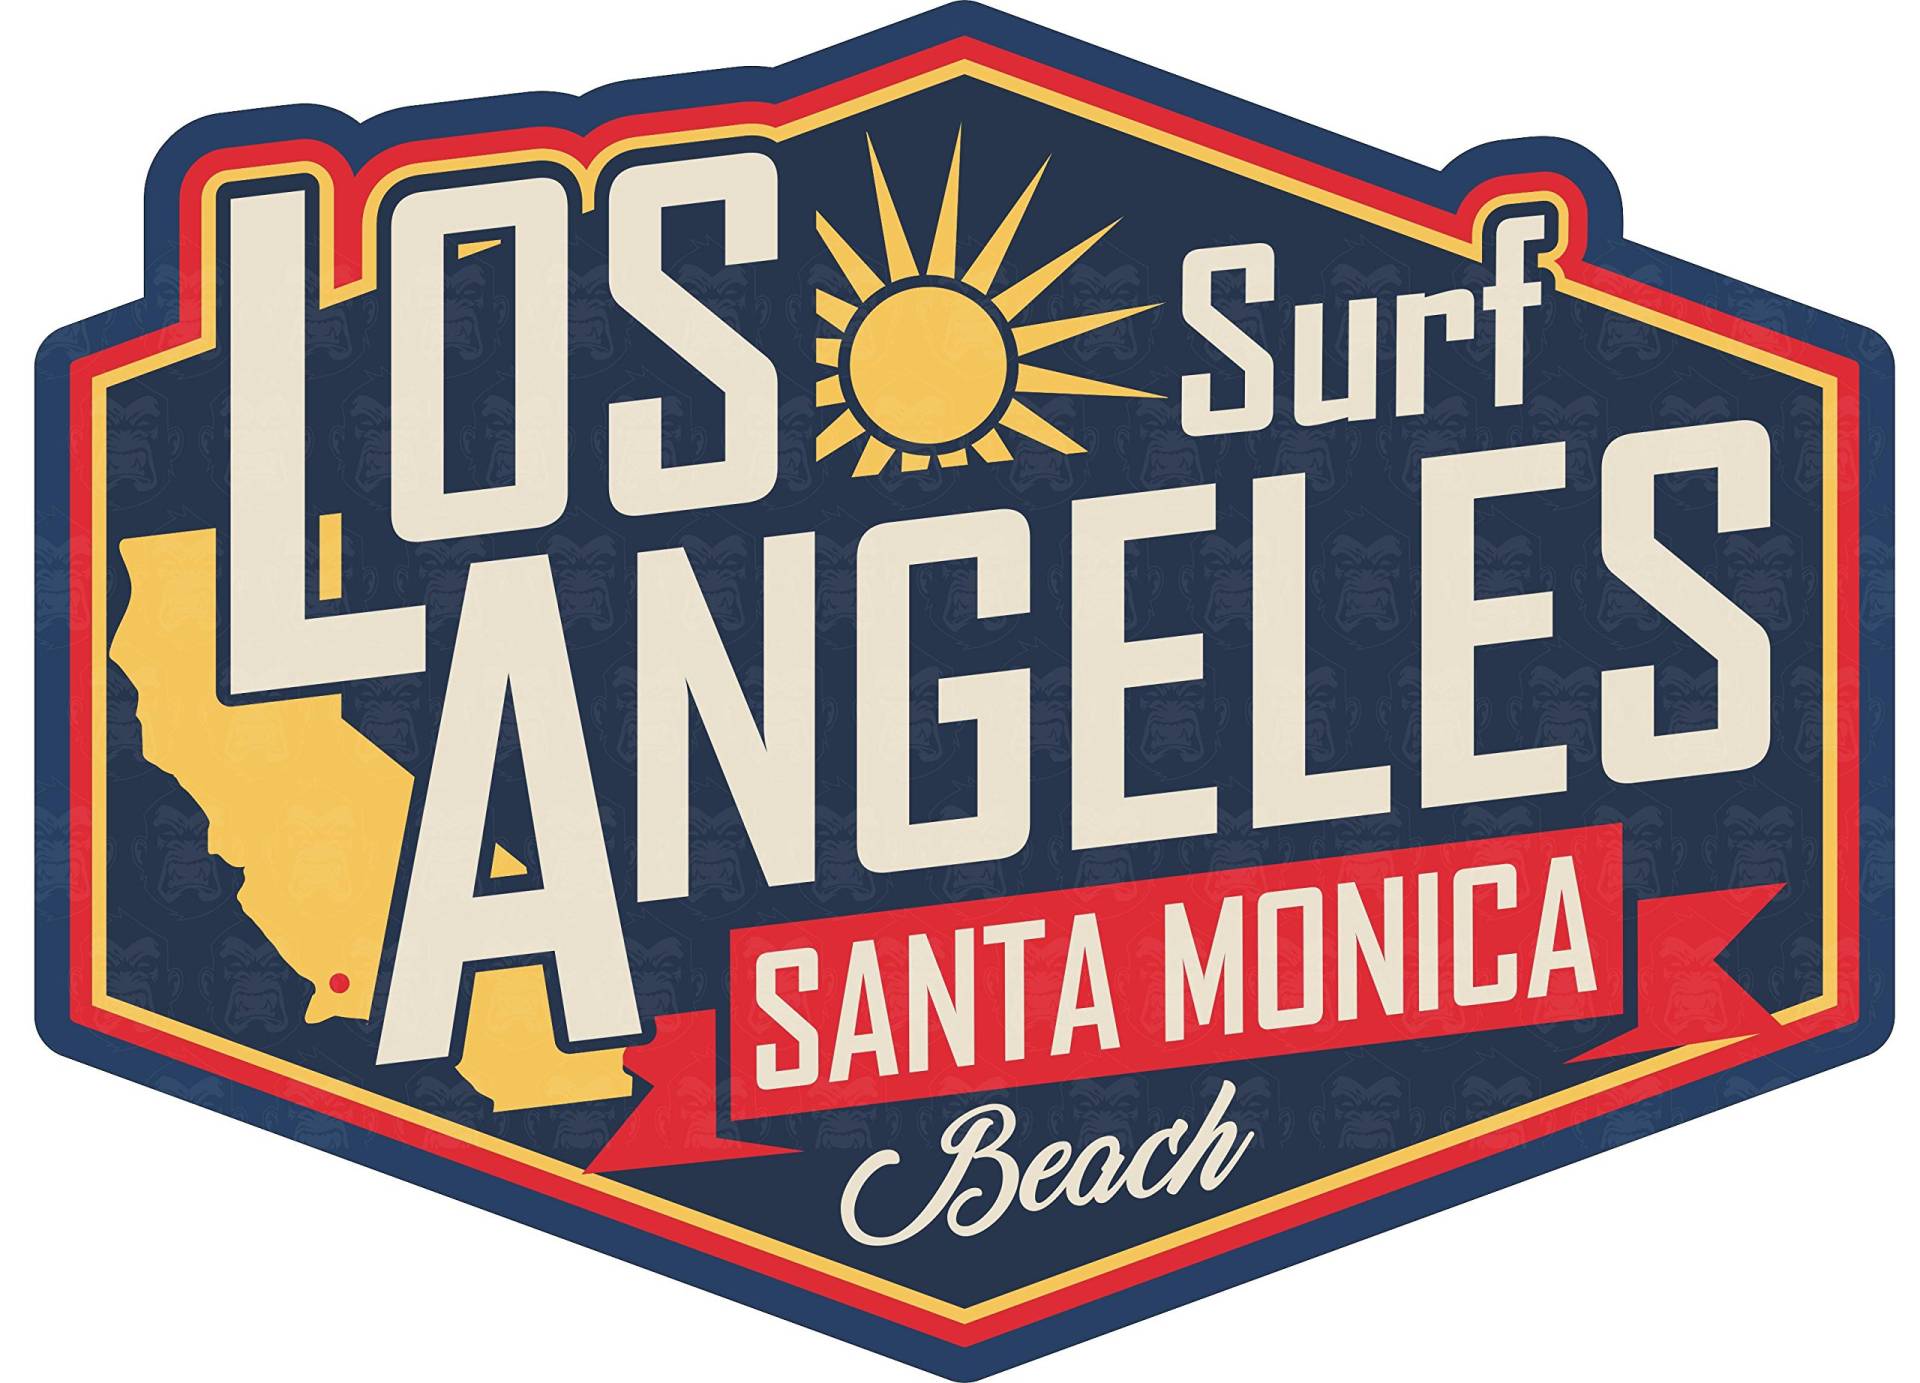 MG042 / LA Beach Surf Aufkleber ca. 8,5x6,5cm Surfer Strand Sonne Urlaub Hippie Rockabilly Old School Vintage Retro Style Sticker von cut-it folientechnik & design